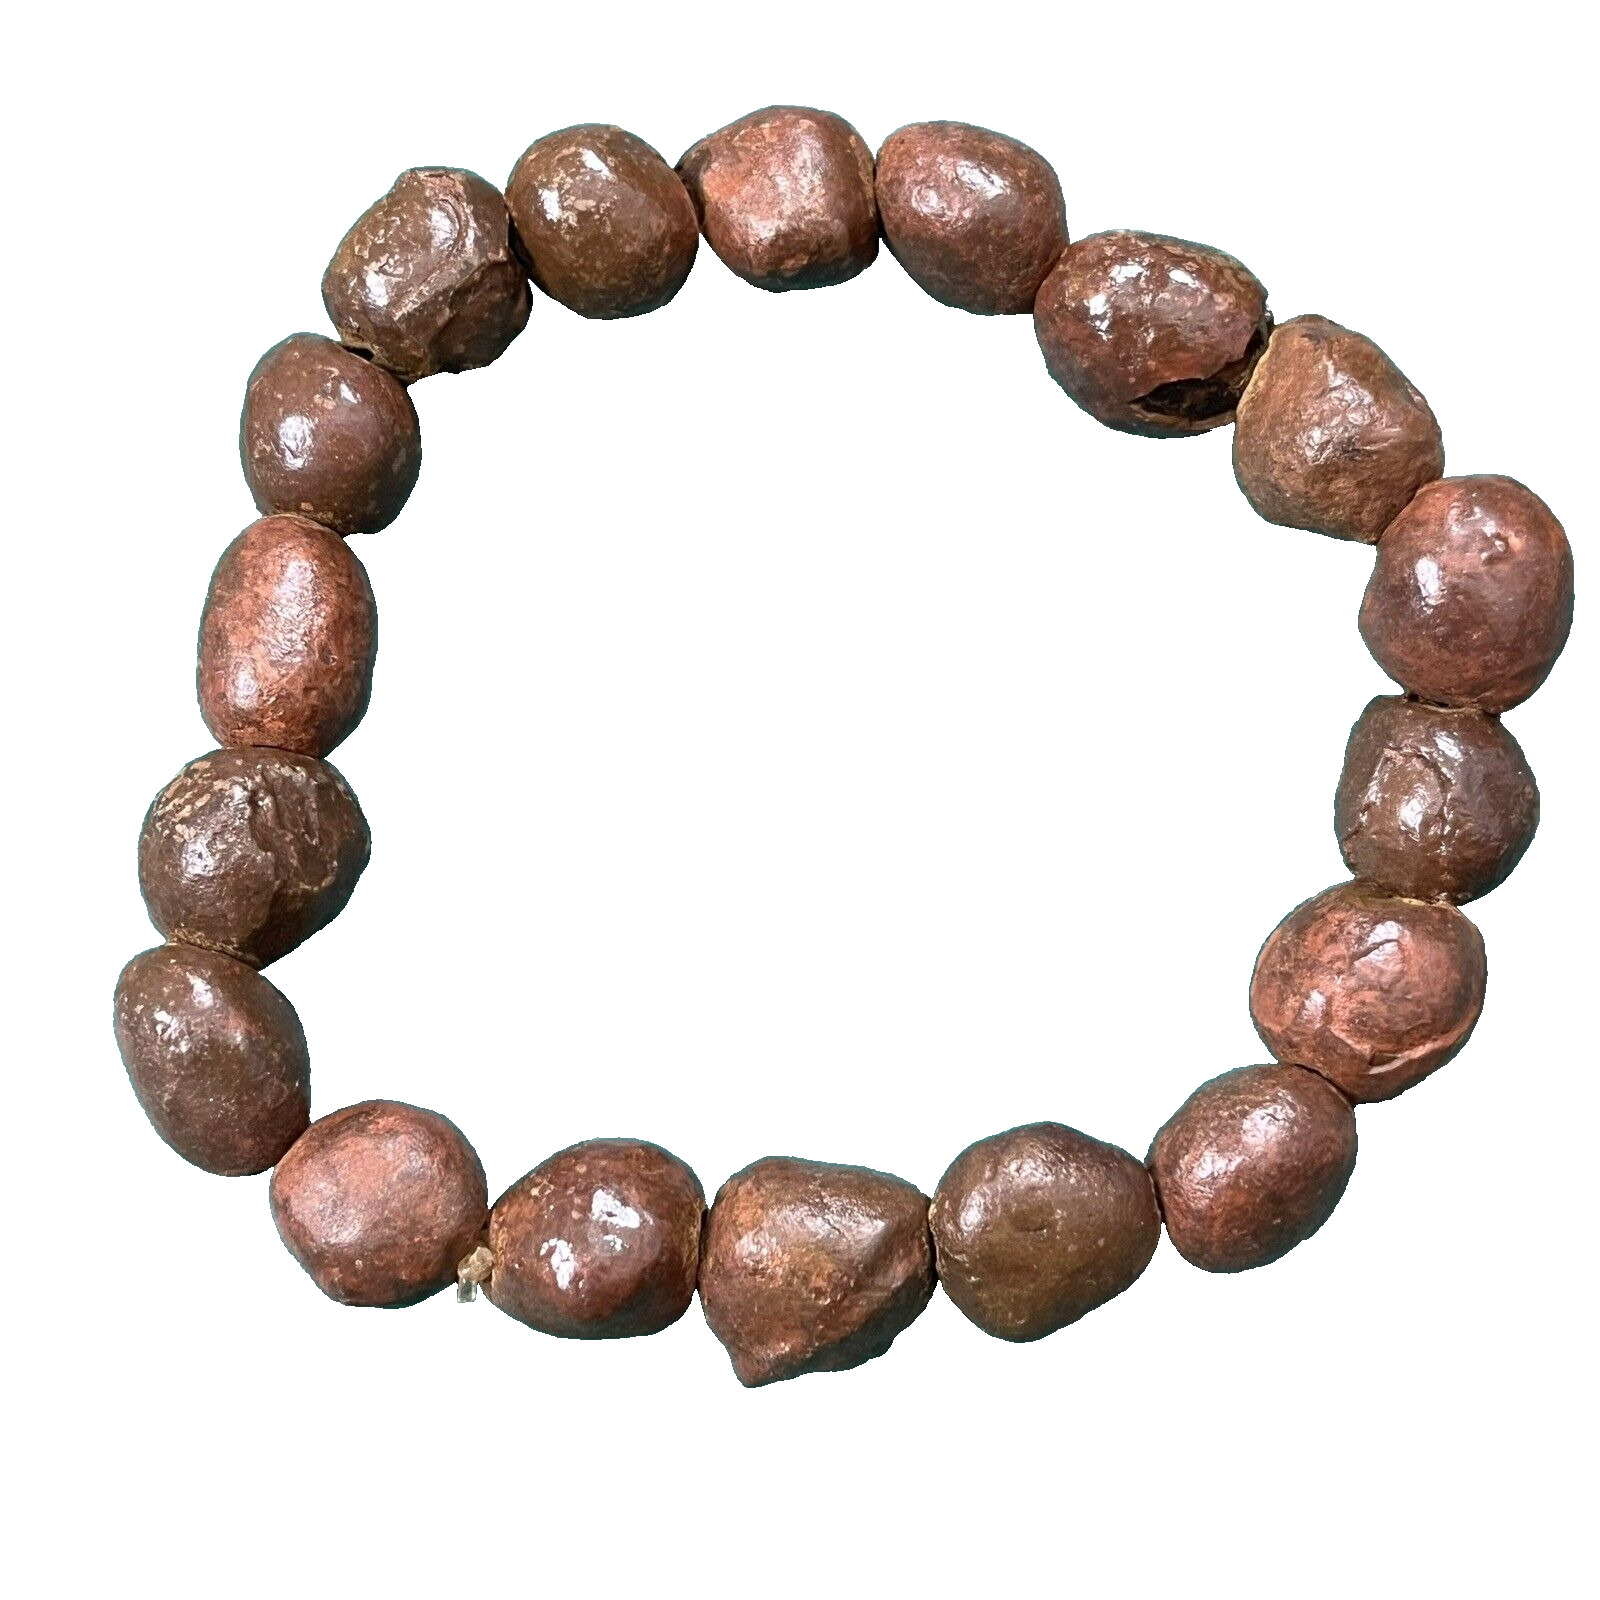 phra somdej 300 yod relic stone buddhist buddha amulet thai 38 g bracelet